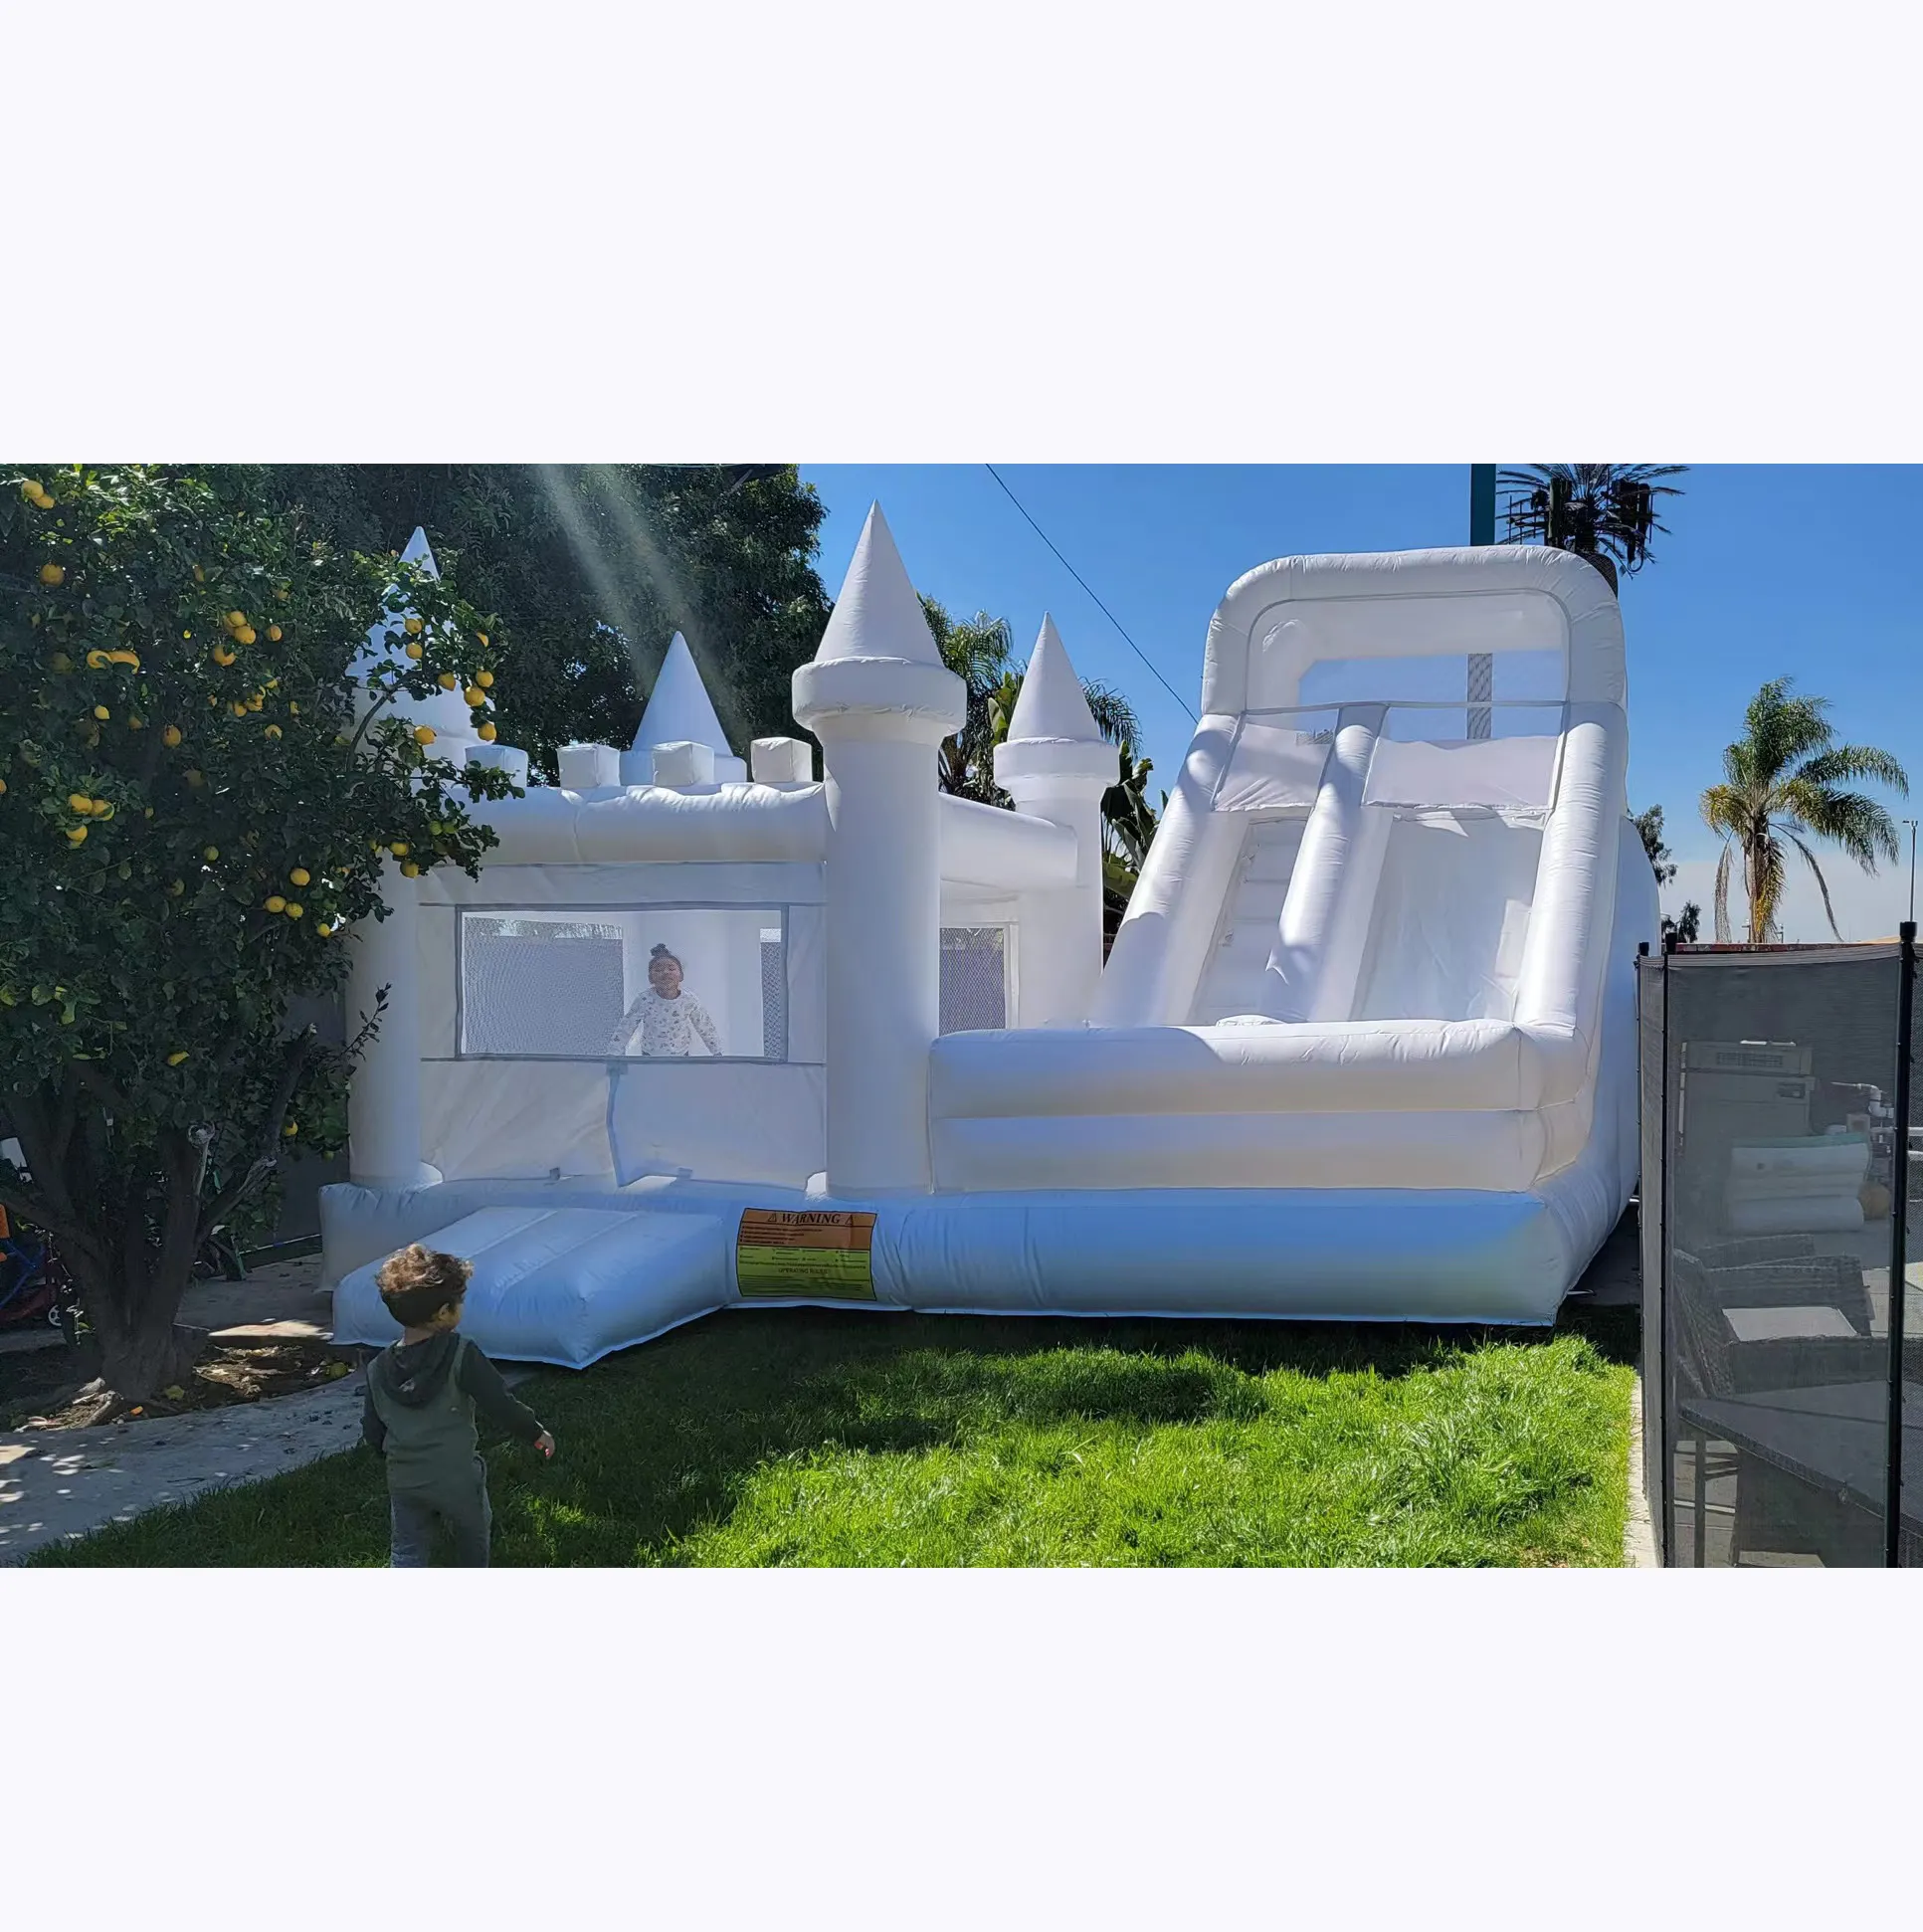 Коммерческий надувной прыгающий домик для взрослых и детей, дешевый надувной замок из ПВХ для продажи, надувной прыгающий домик, комбинированная горка